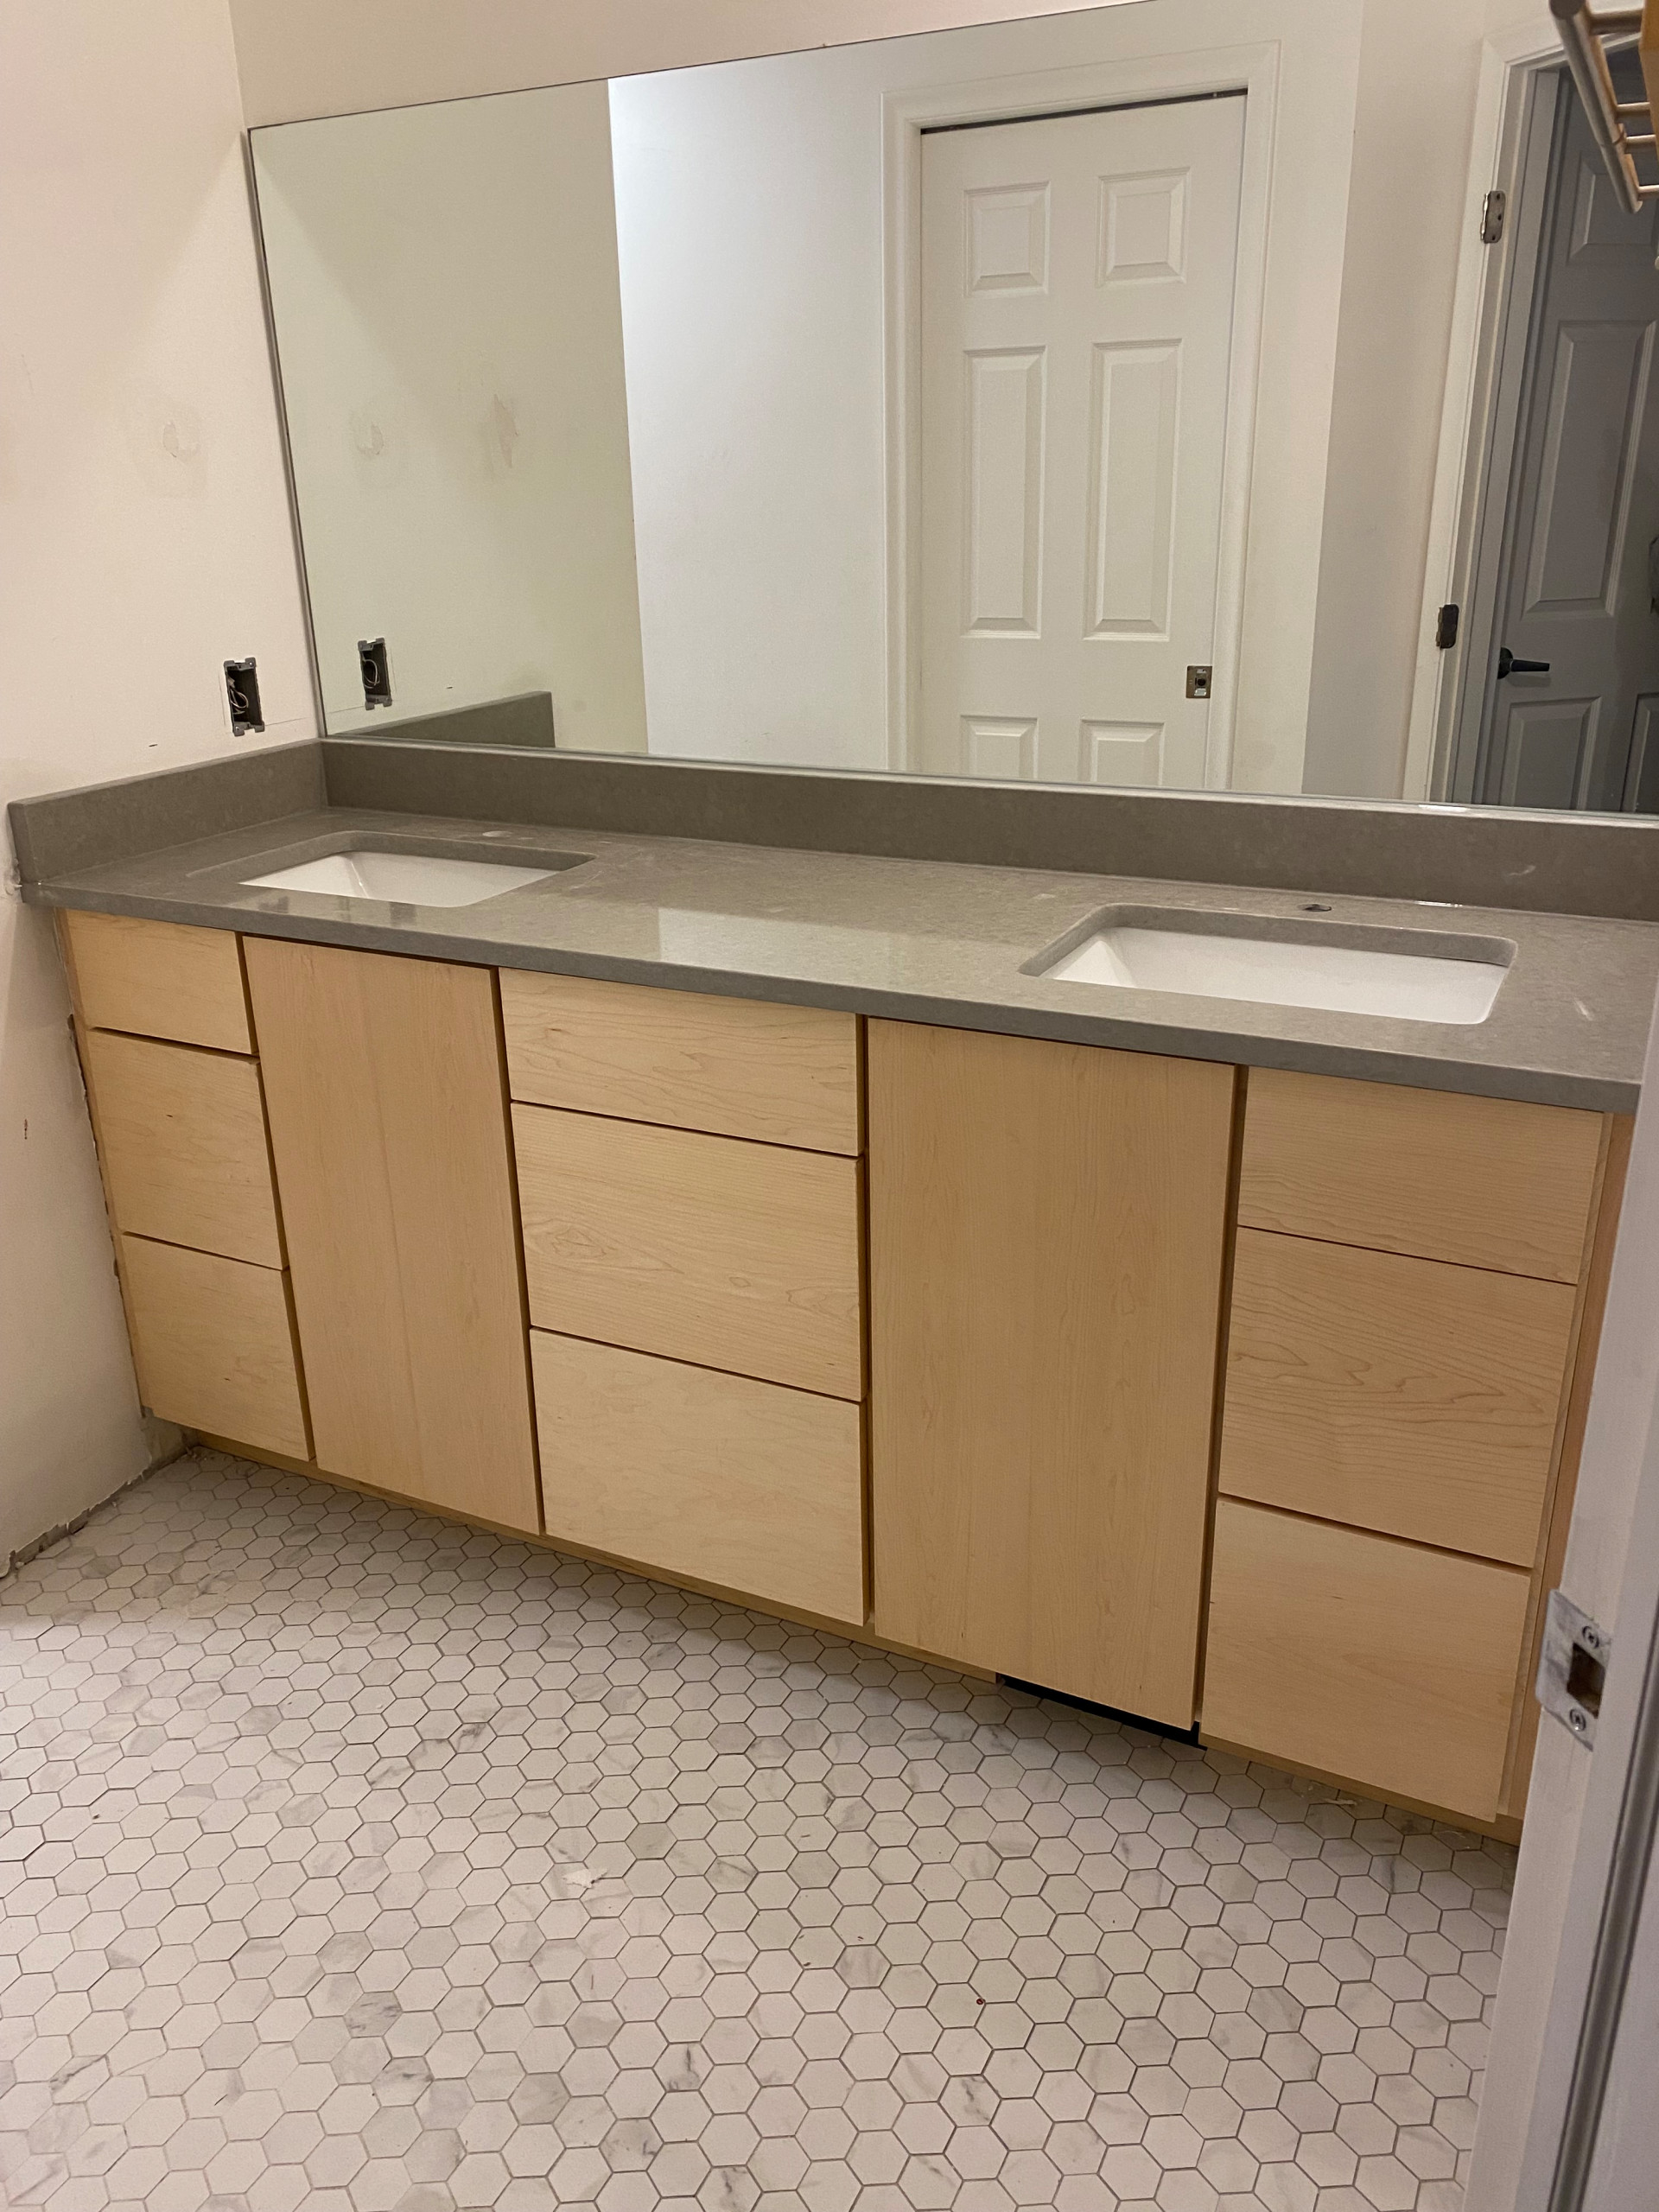 Clarkston kitchen/bath/flooring remodel